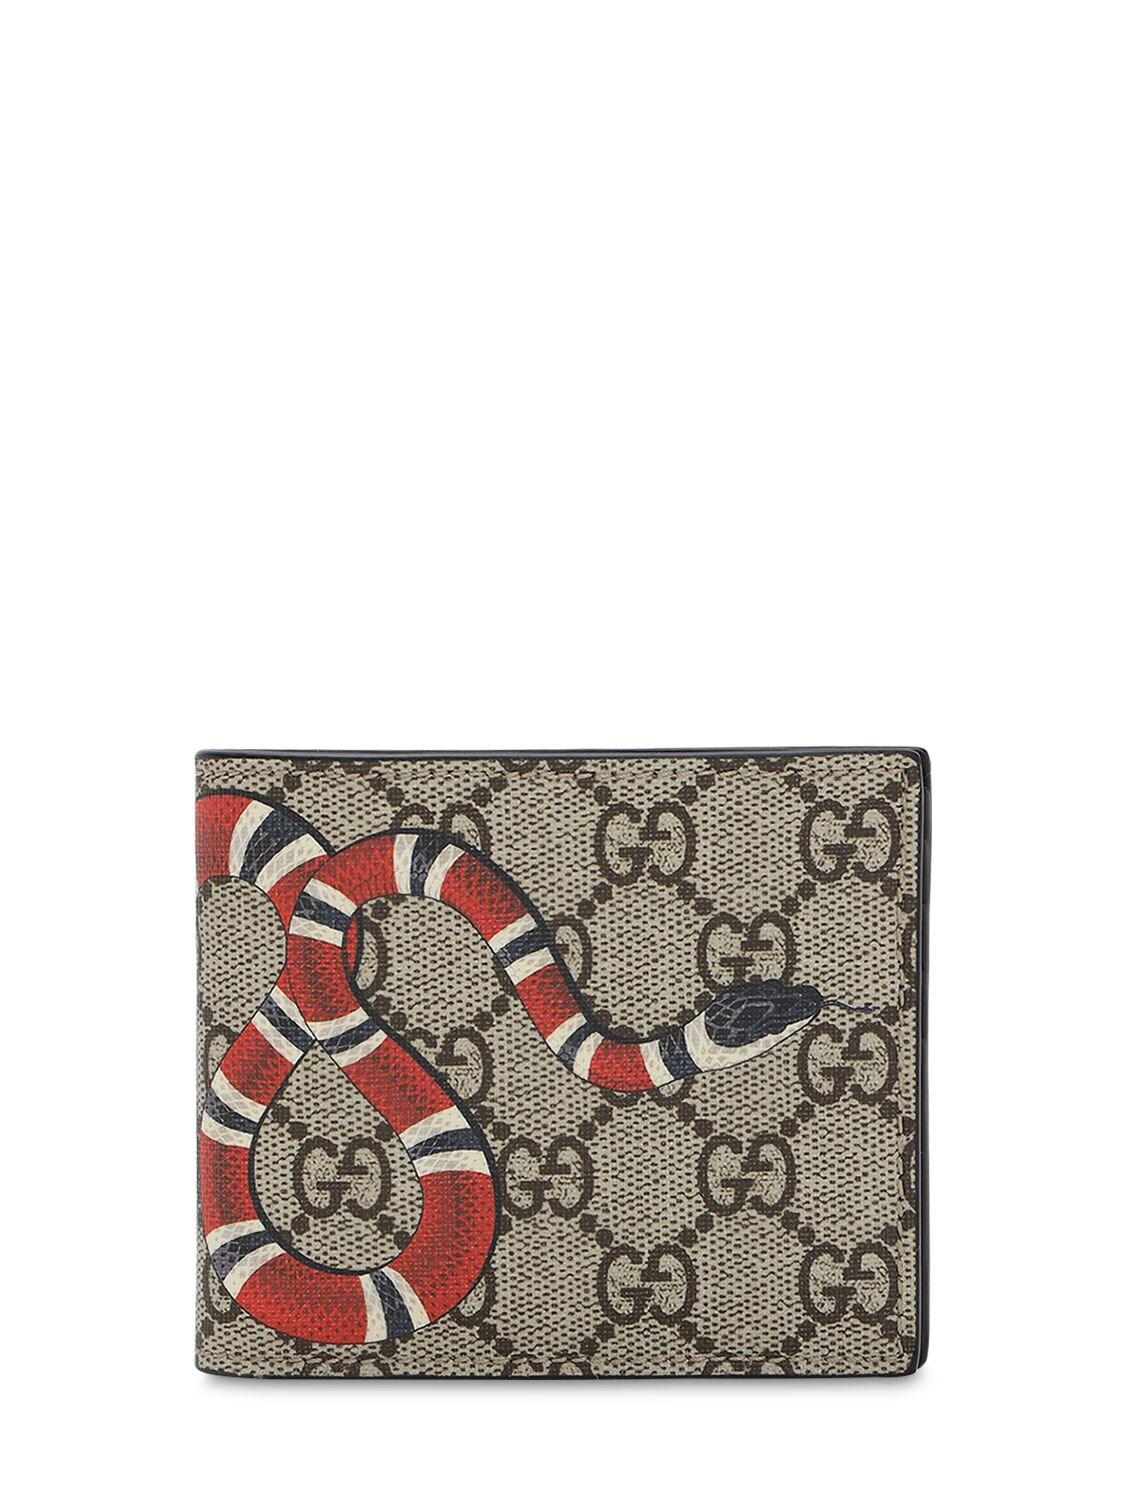 Gucci Bestiary Kingsnake Print Card Case (451277)